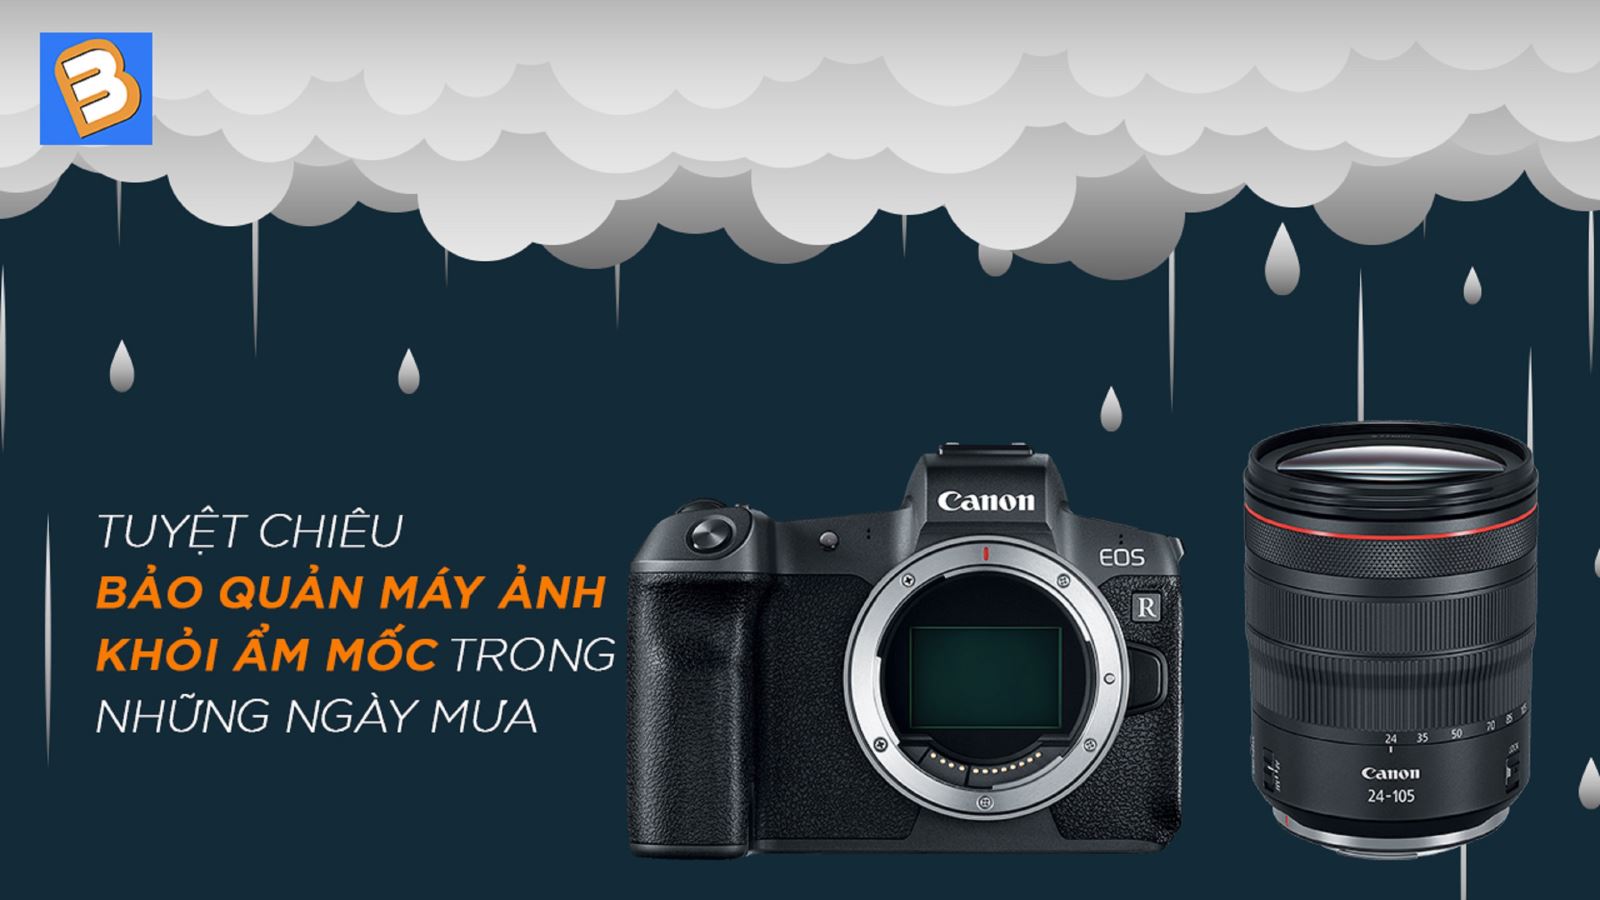 Tuyệt chiêu bảo quản máy ảnh khỏi ẩm mốc trong những ngày mưa